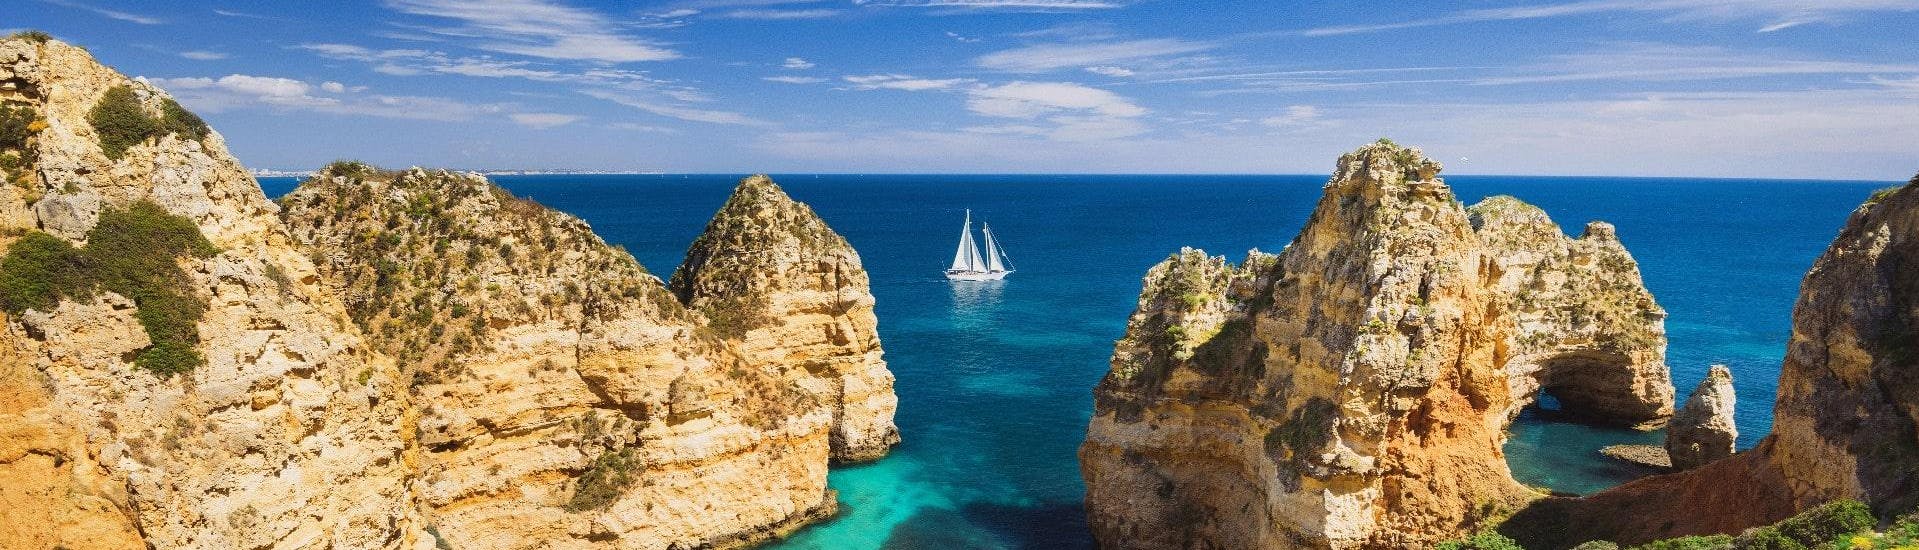 Ein Bild der atemberaubenden Felsformationen entlang der Algarve, die man bei einer Bootstour von Albufeira bestaunen kann.